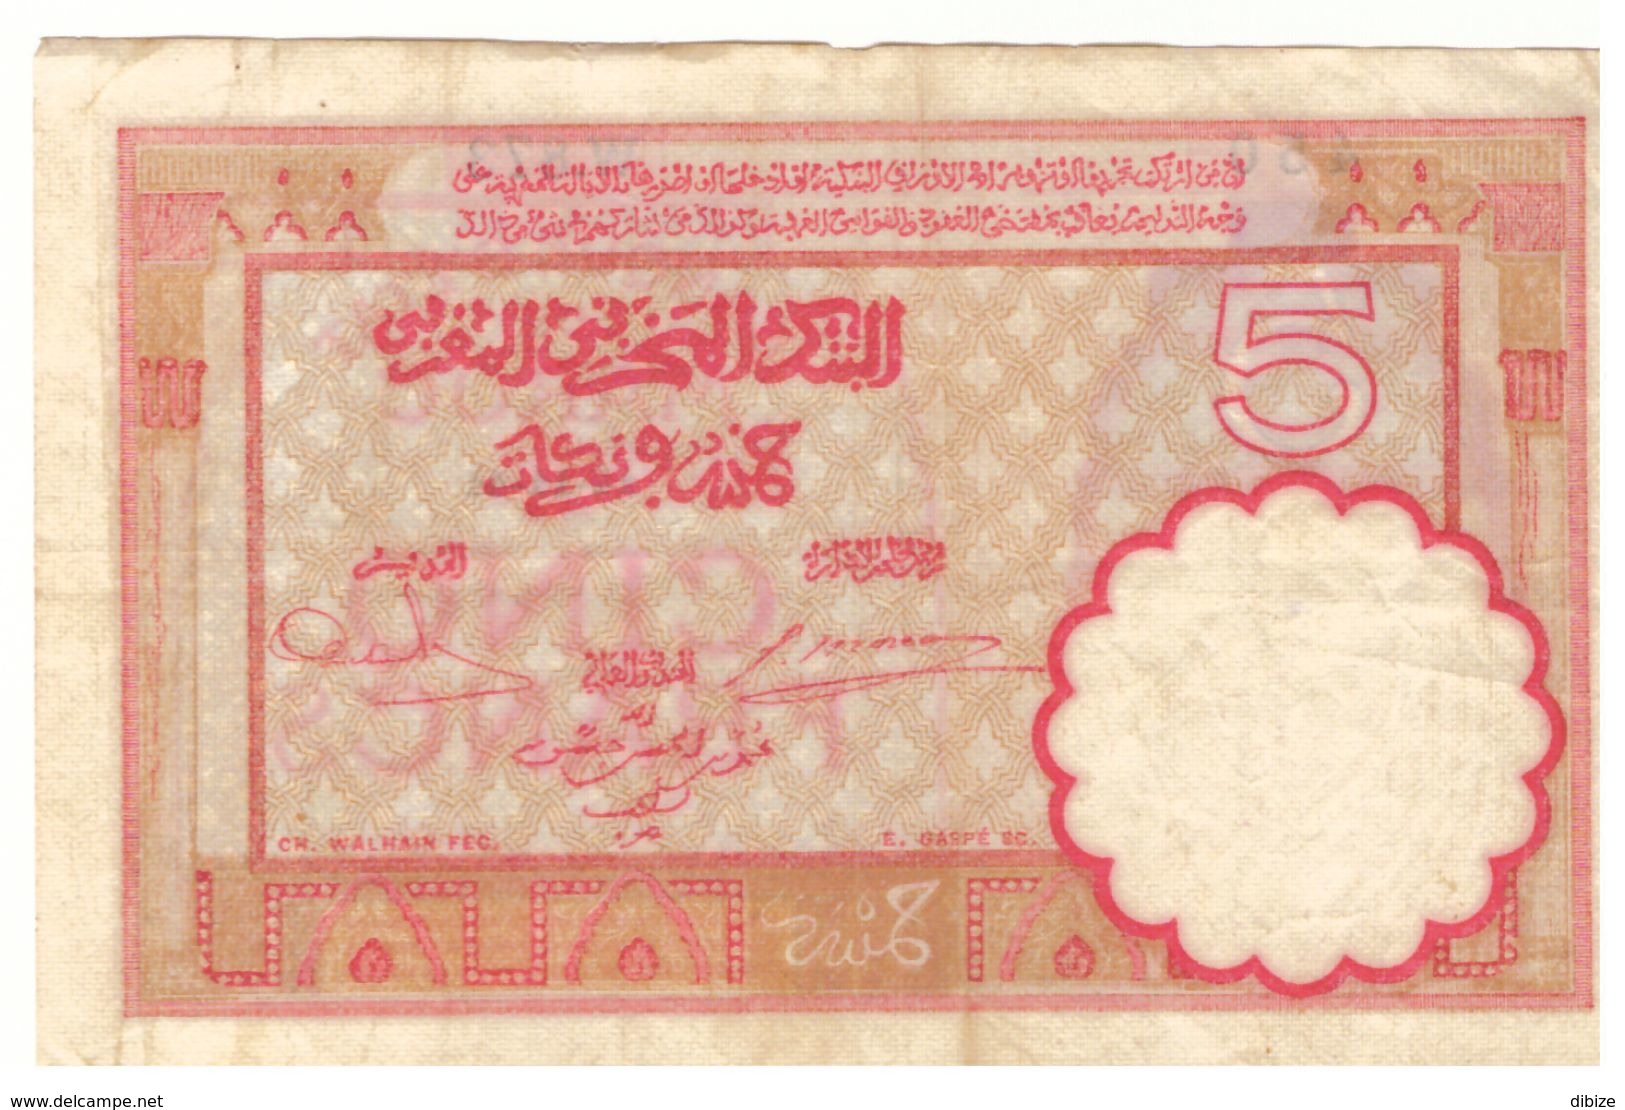 Maroc Billet De 5 Francs De 1941 (14-11-1941). Etat Moyen. Port 4 Euros En Recommandé. - Maroc